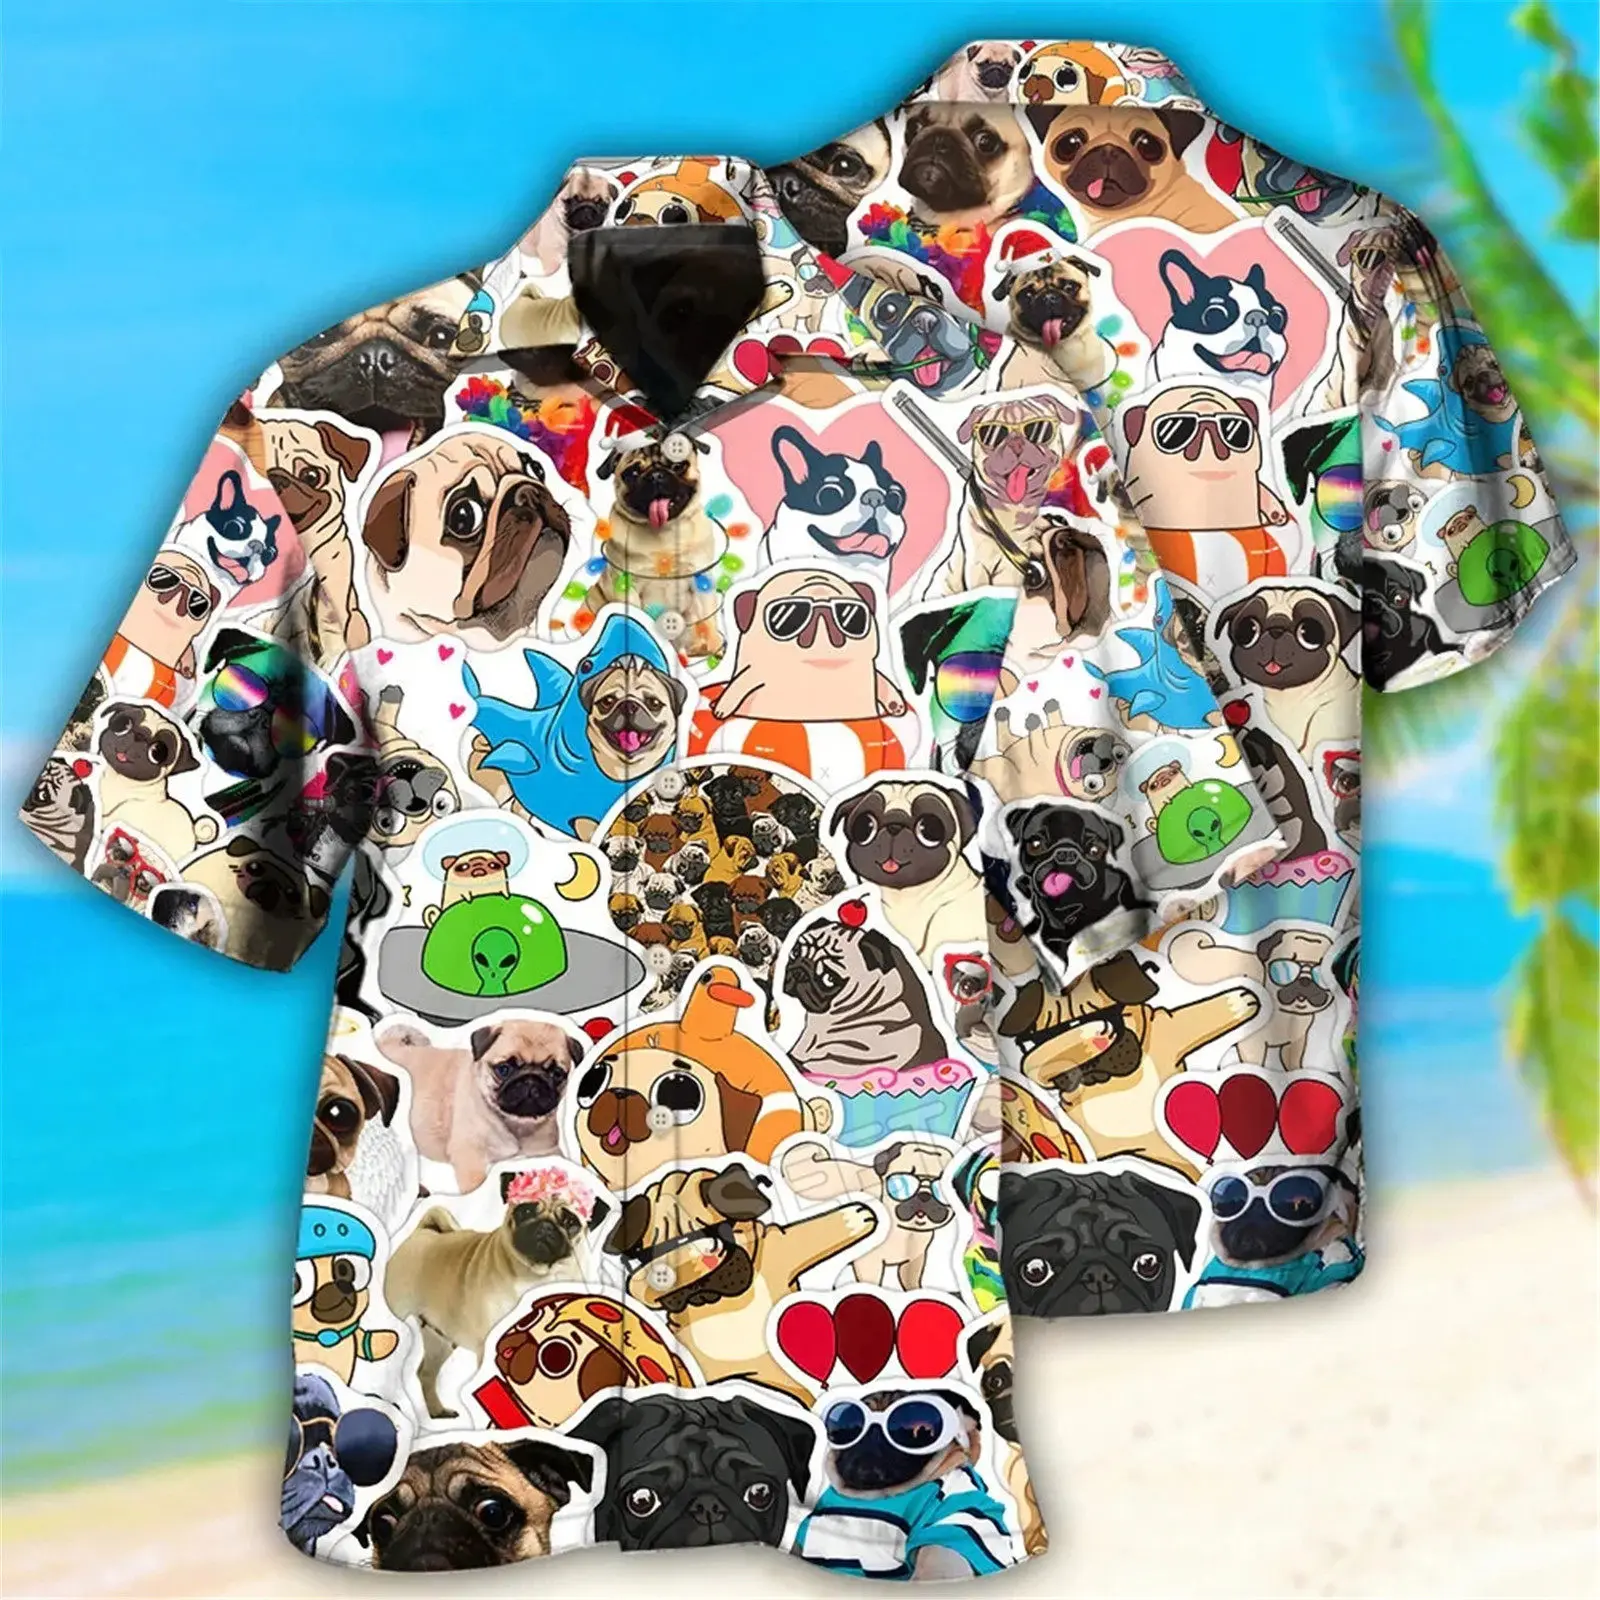 

HX забавные мужские рубашки с 3D принтом животных мопса гавайская рубашка с коротким рукавом шорты пляжная одежда для серфинга мужские комплекты Прямая поставка